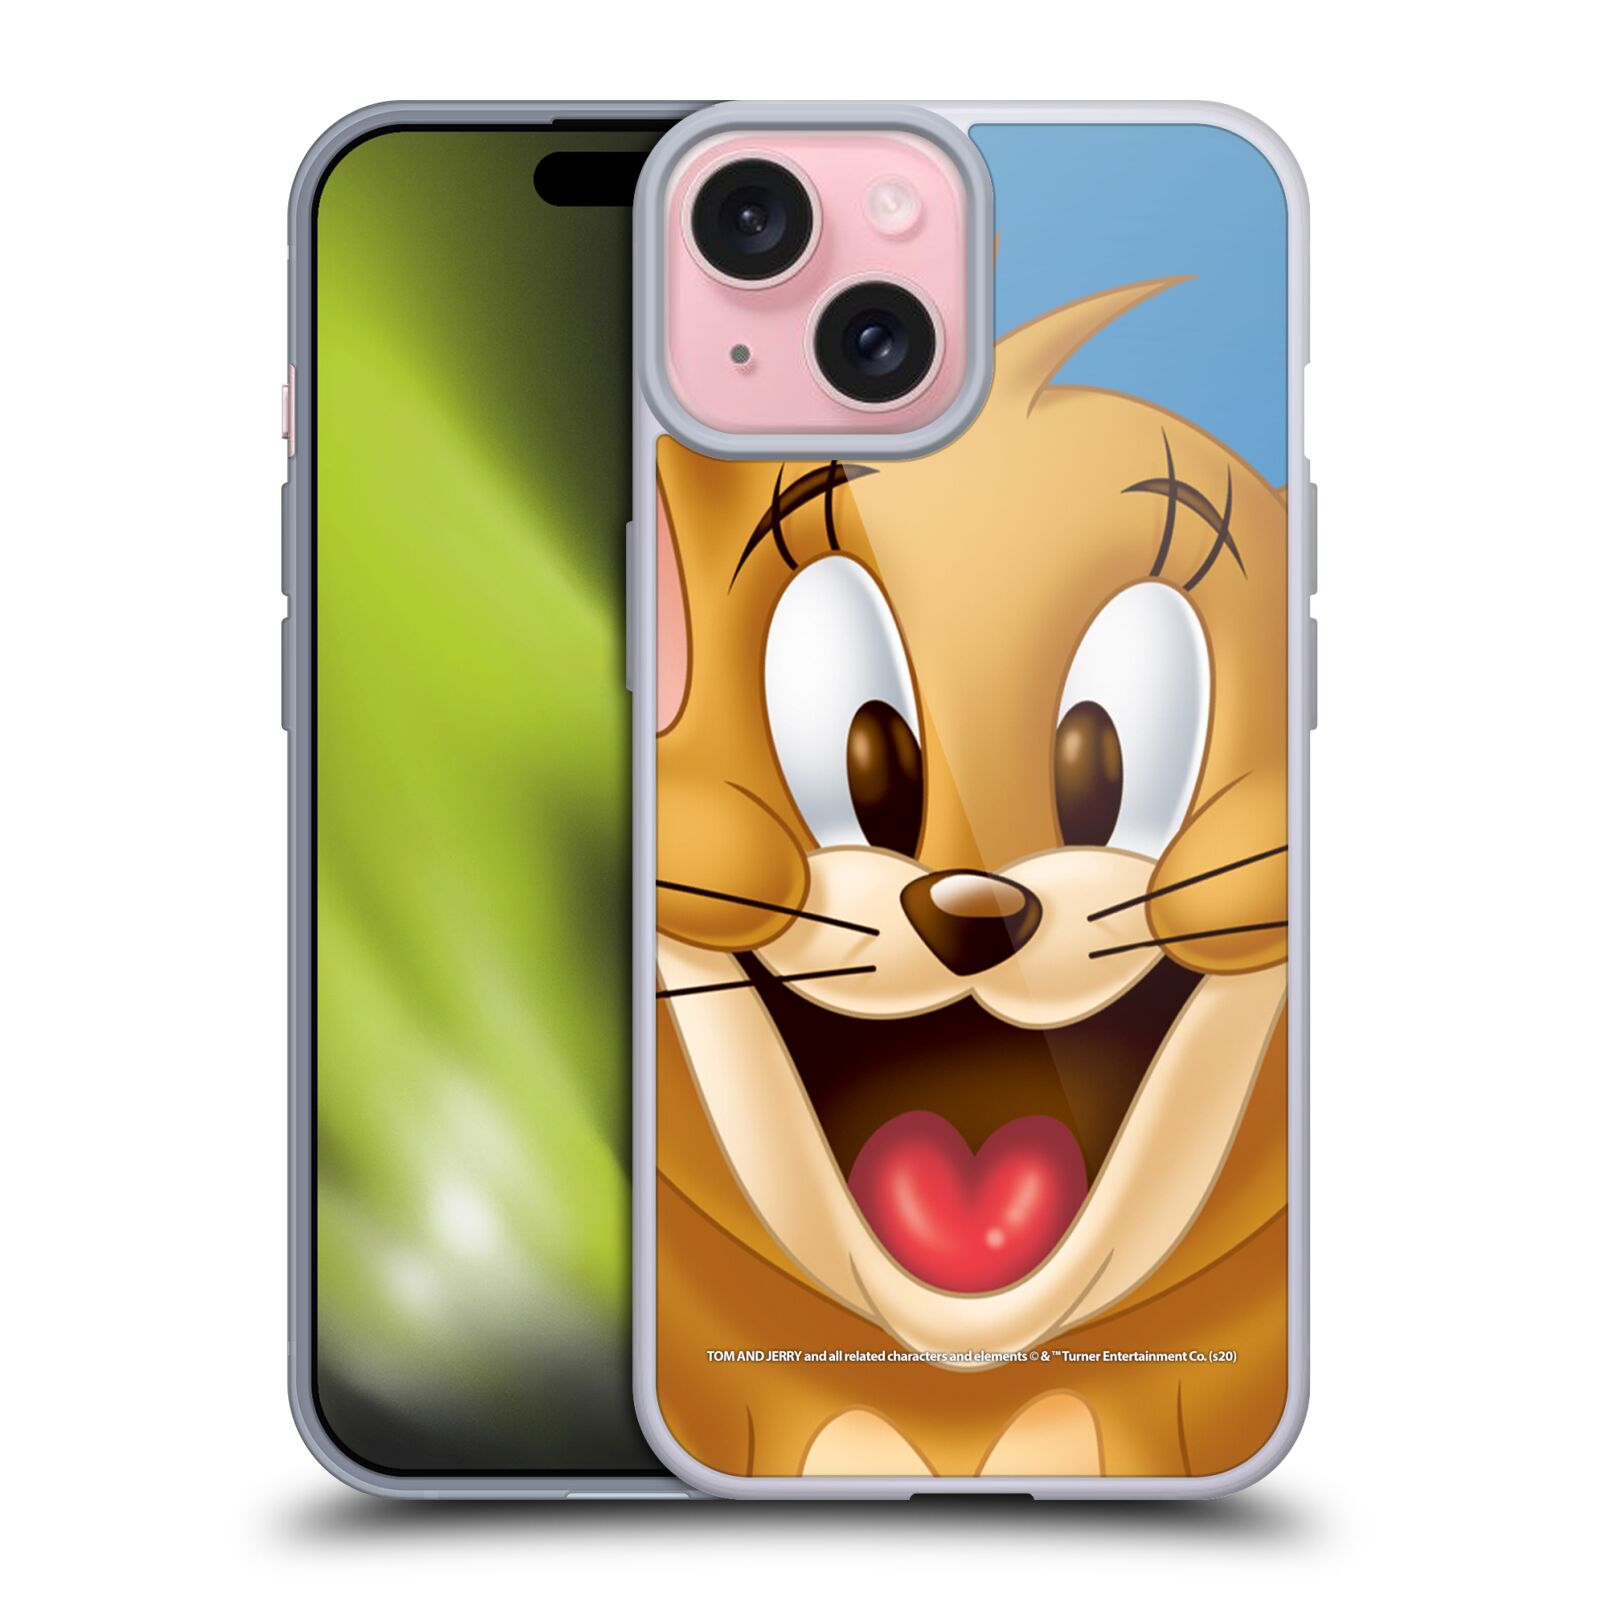 Silikonové lesklé pouzdro na mobil Apple iPhone 15 - Tom and Jerry - Jerry (Silikonový lesklý kryt, obal, pouzdro na mobilní telefon Apple iPhone 15 s licencovaným motivem Tom and Jerry - Jerry)